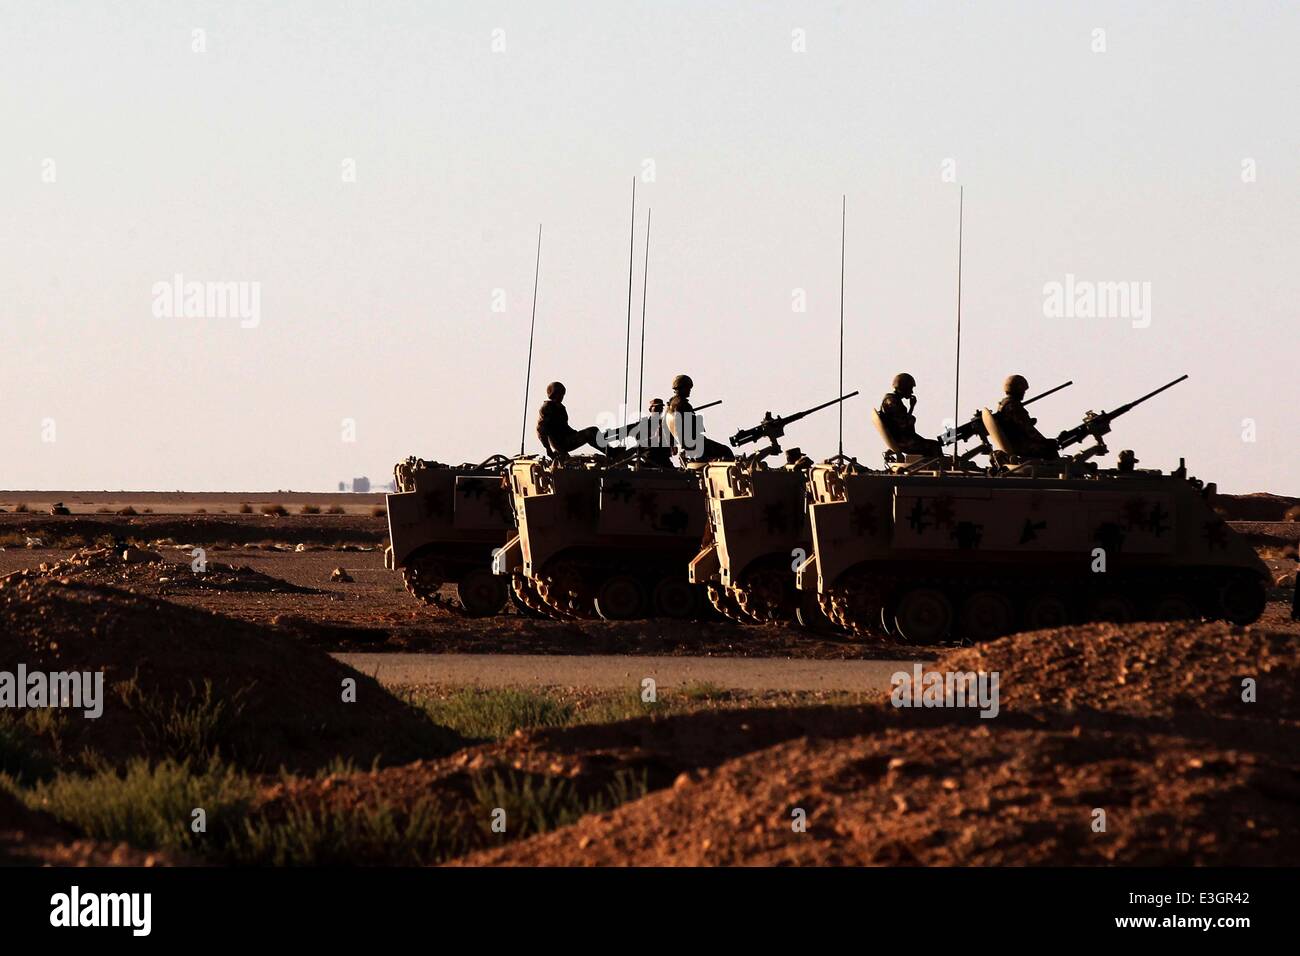 Al Karamah Crossing. Il 23 giugno, 2014. I soldati giordani sono visibili sul loro serbatoi militari vicino al Karamah attraversando il confine Iraq-Jordan Frontiera, il 23 giugno 2014. La Giordania il lunedì ha iniziato a mobilitare le forze lungo il confine con l'Iraq per impedire eventuali infiltrazioni di militanti sunniti nel mezzo di un deterioramento della situazione della sicurezza in Iraq. Credito: Mohammad Abu Ghosh/Xinhua/Alamy Live News Foto Stock